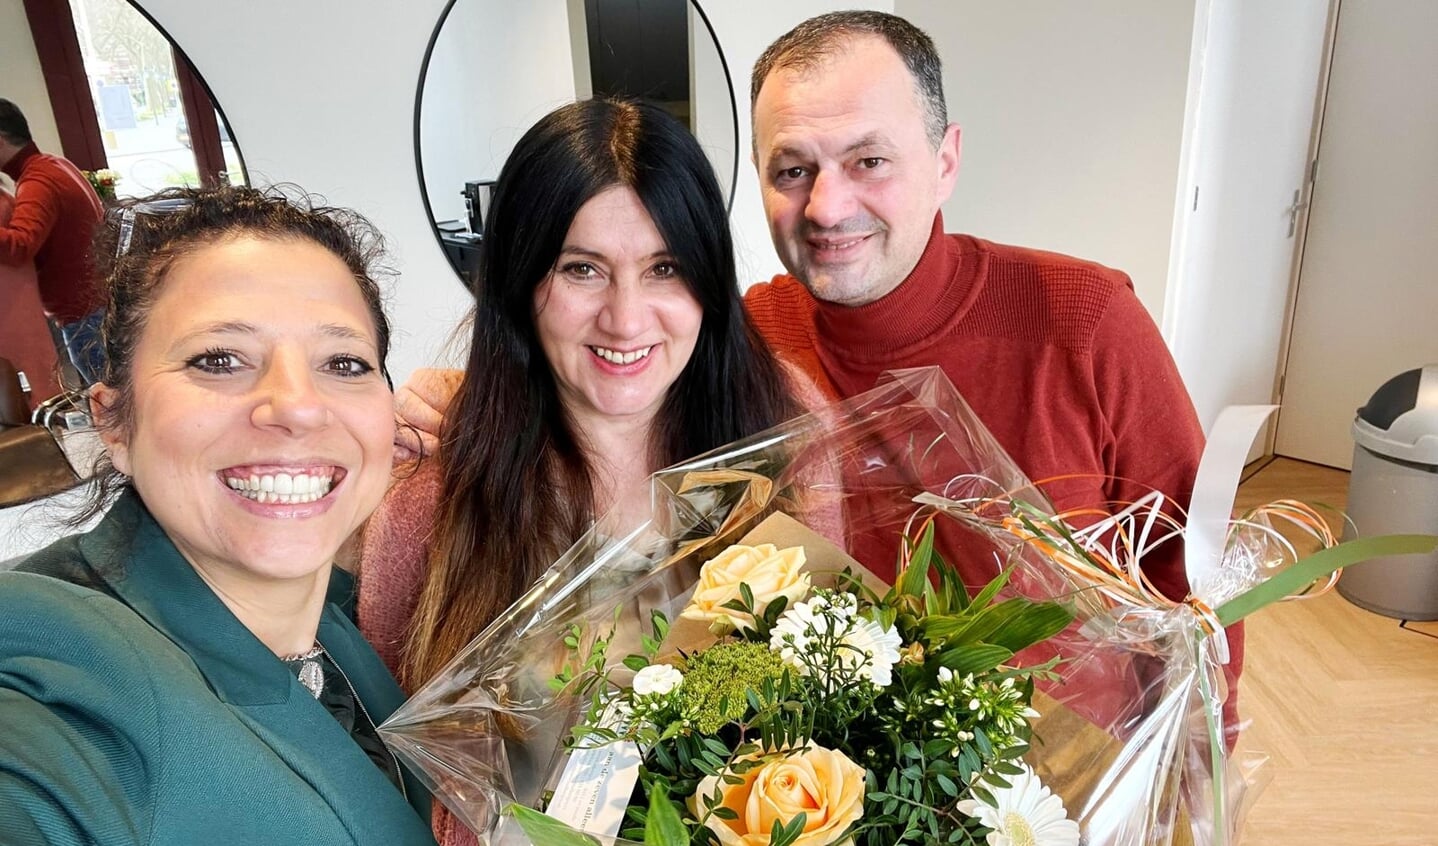 Naual Liberg van NS bracht afgelopen week een bloemetje om de opening van de kapperszaak te vieren.